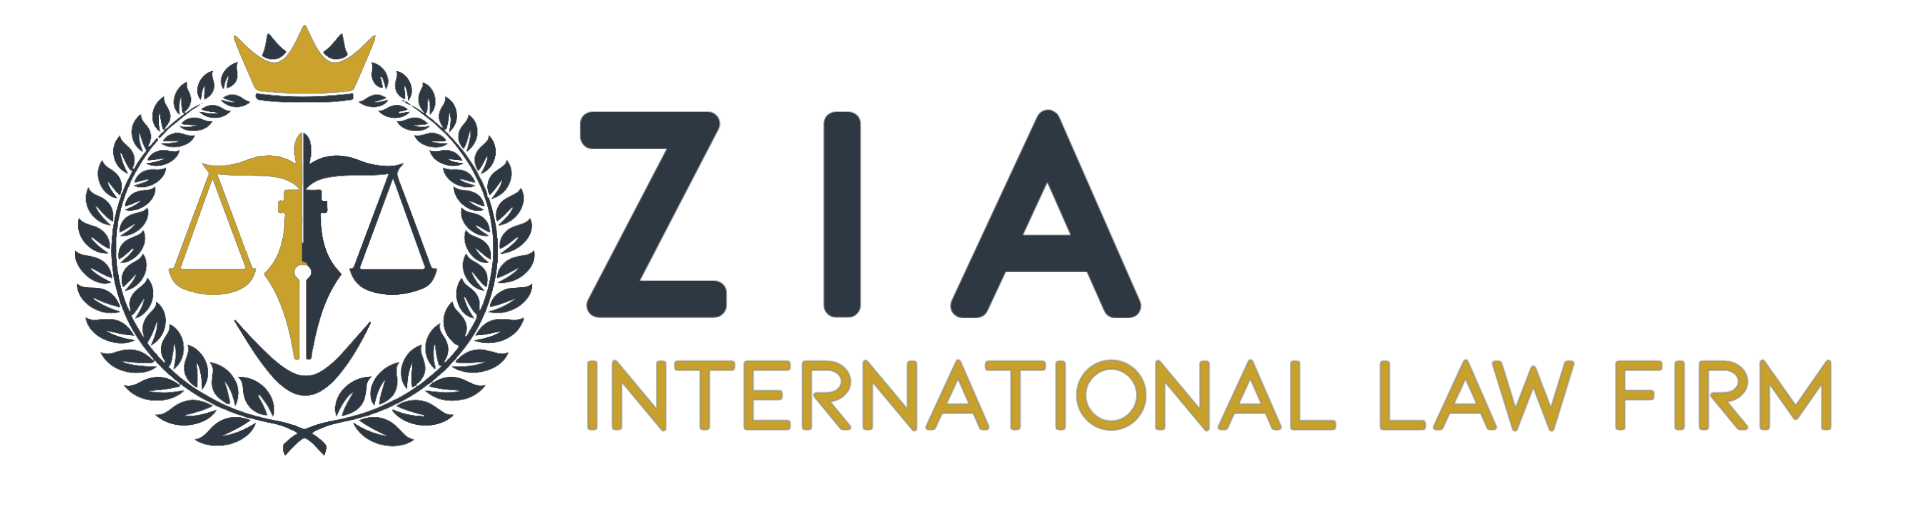 Zia International Law Firm